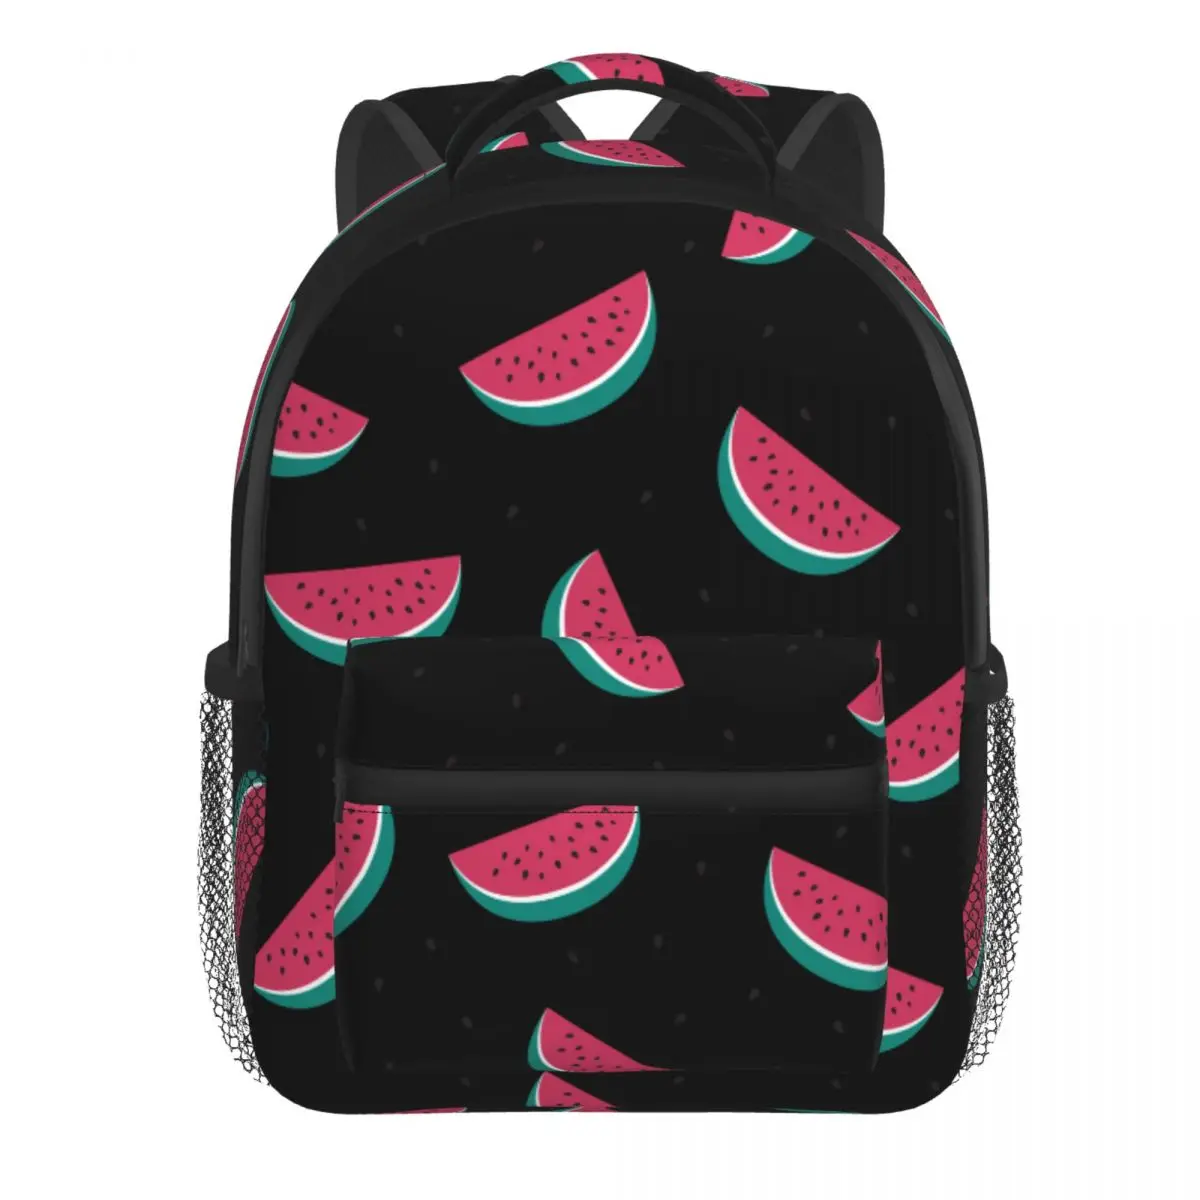 Kids Backpack Cute Black Watermelon Pattern Kindergarten Children Mochila School Bag